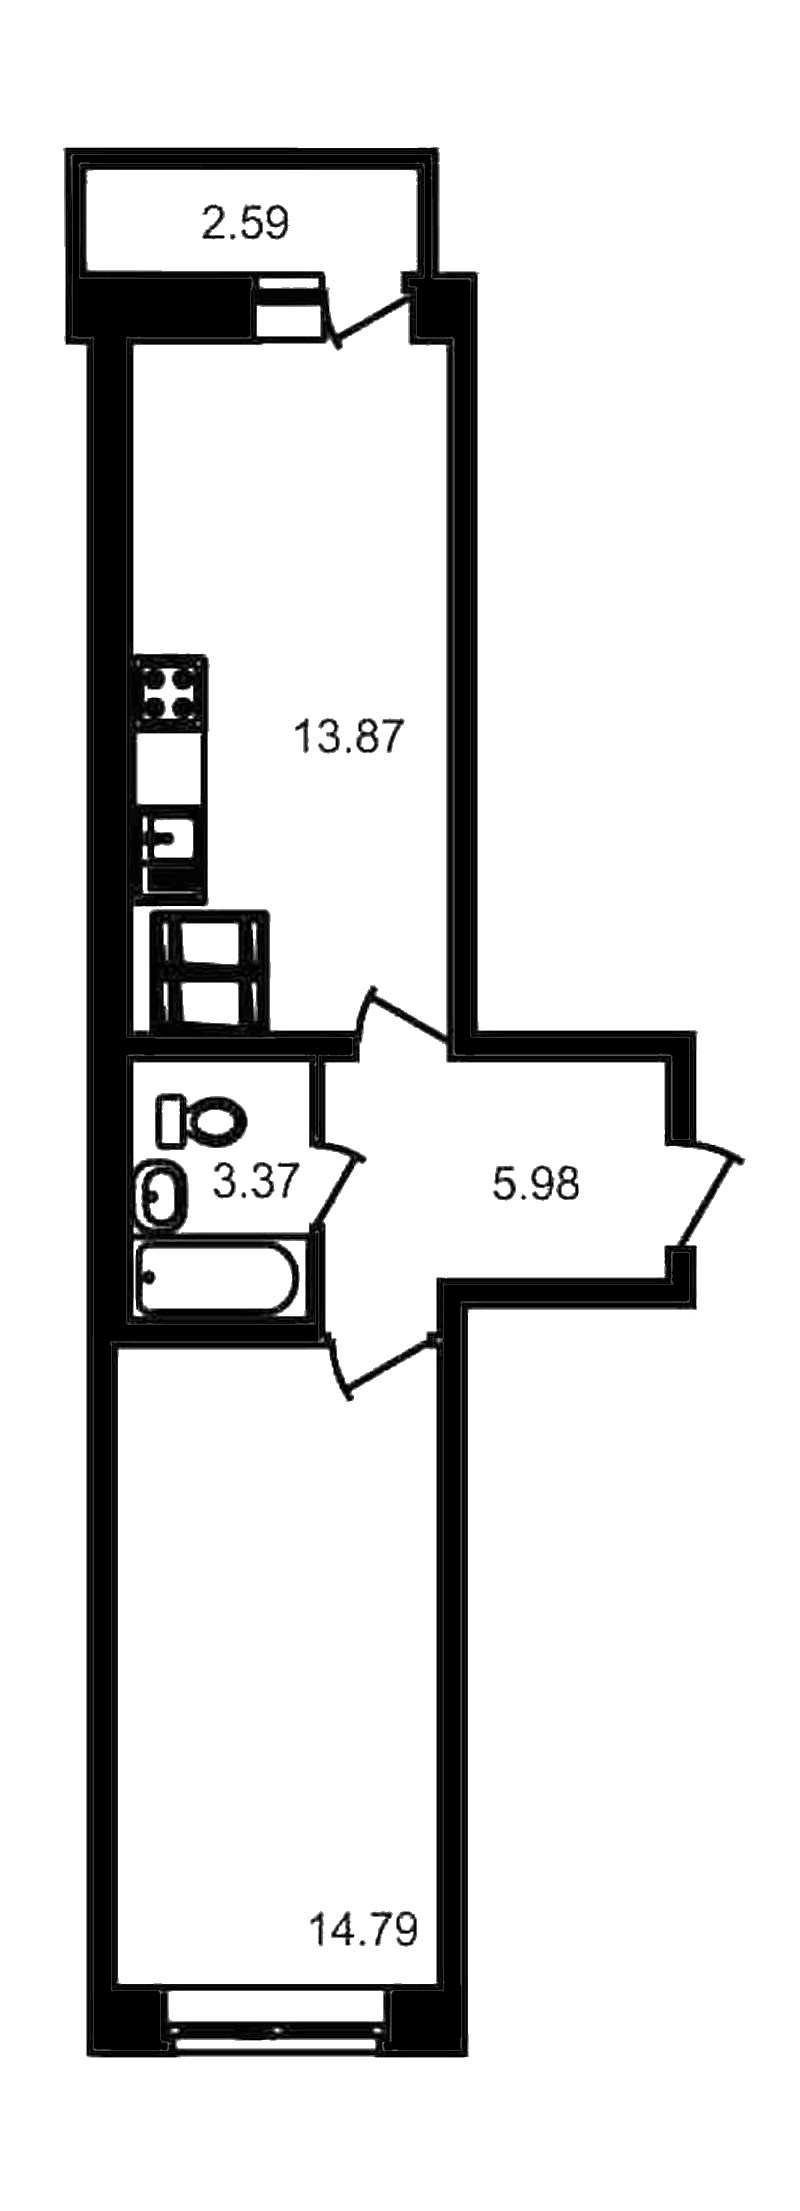 Однокомнатная квартира в ЦДС: площадь 40.6 м2 , этаж: 18 – купить в Санкт-Петербурге